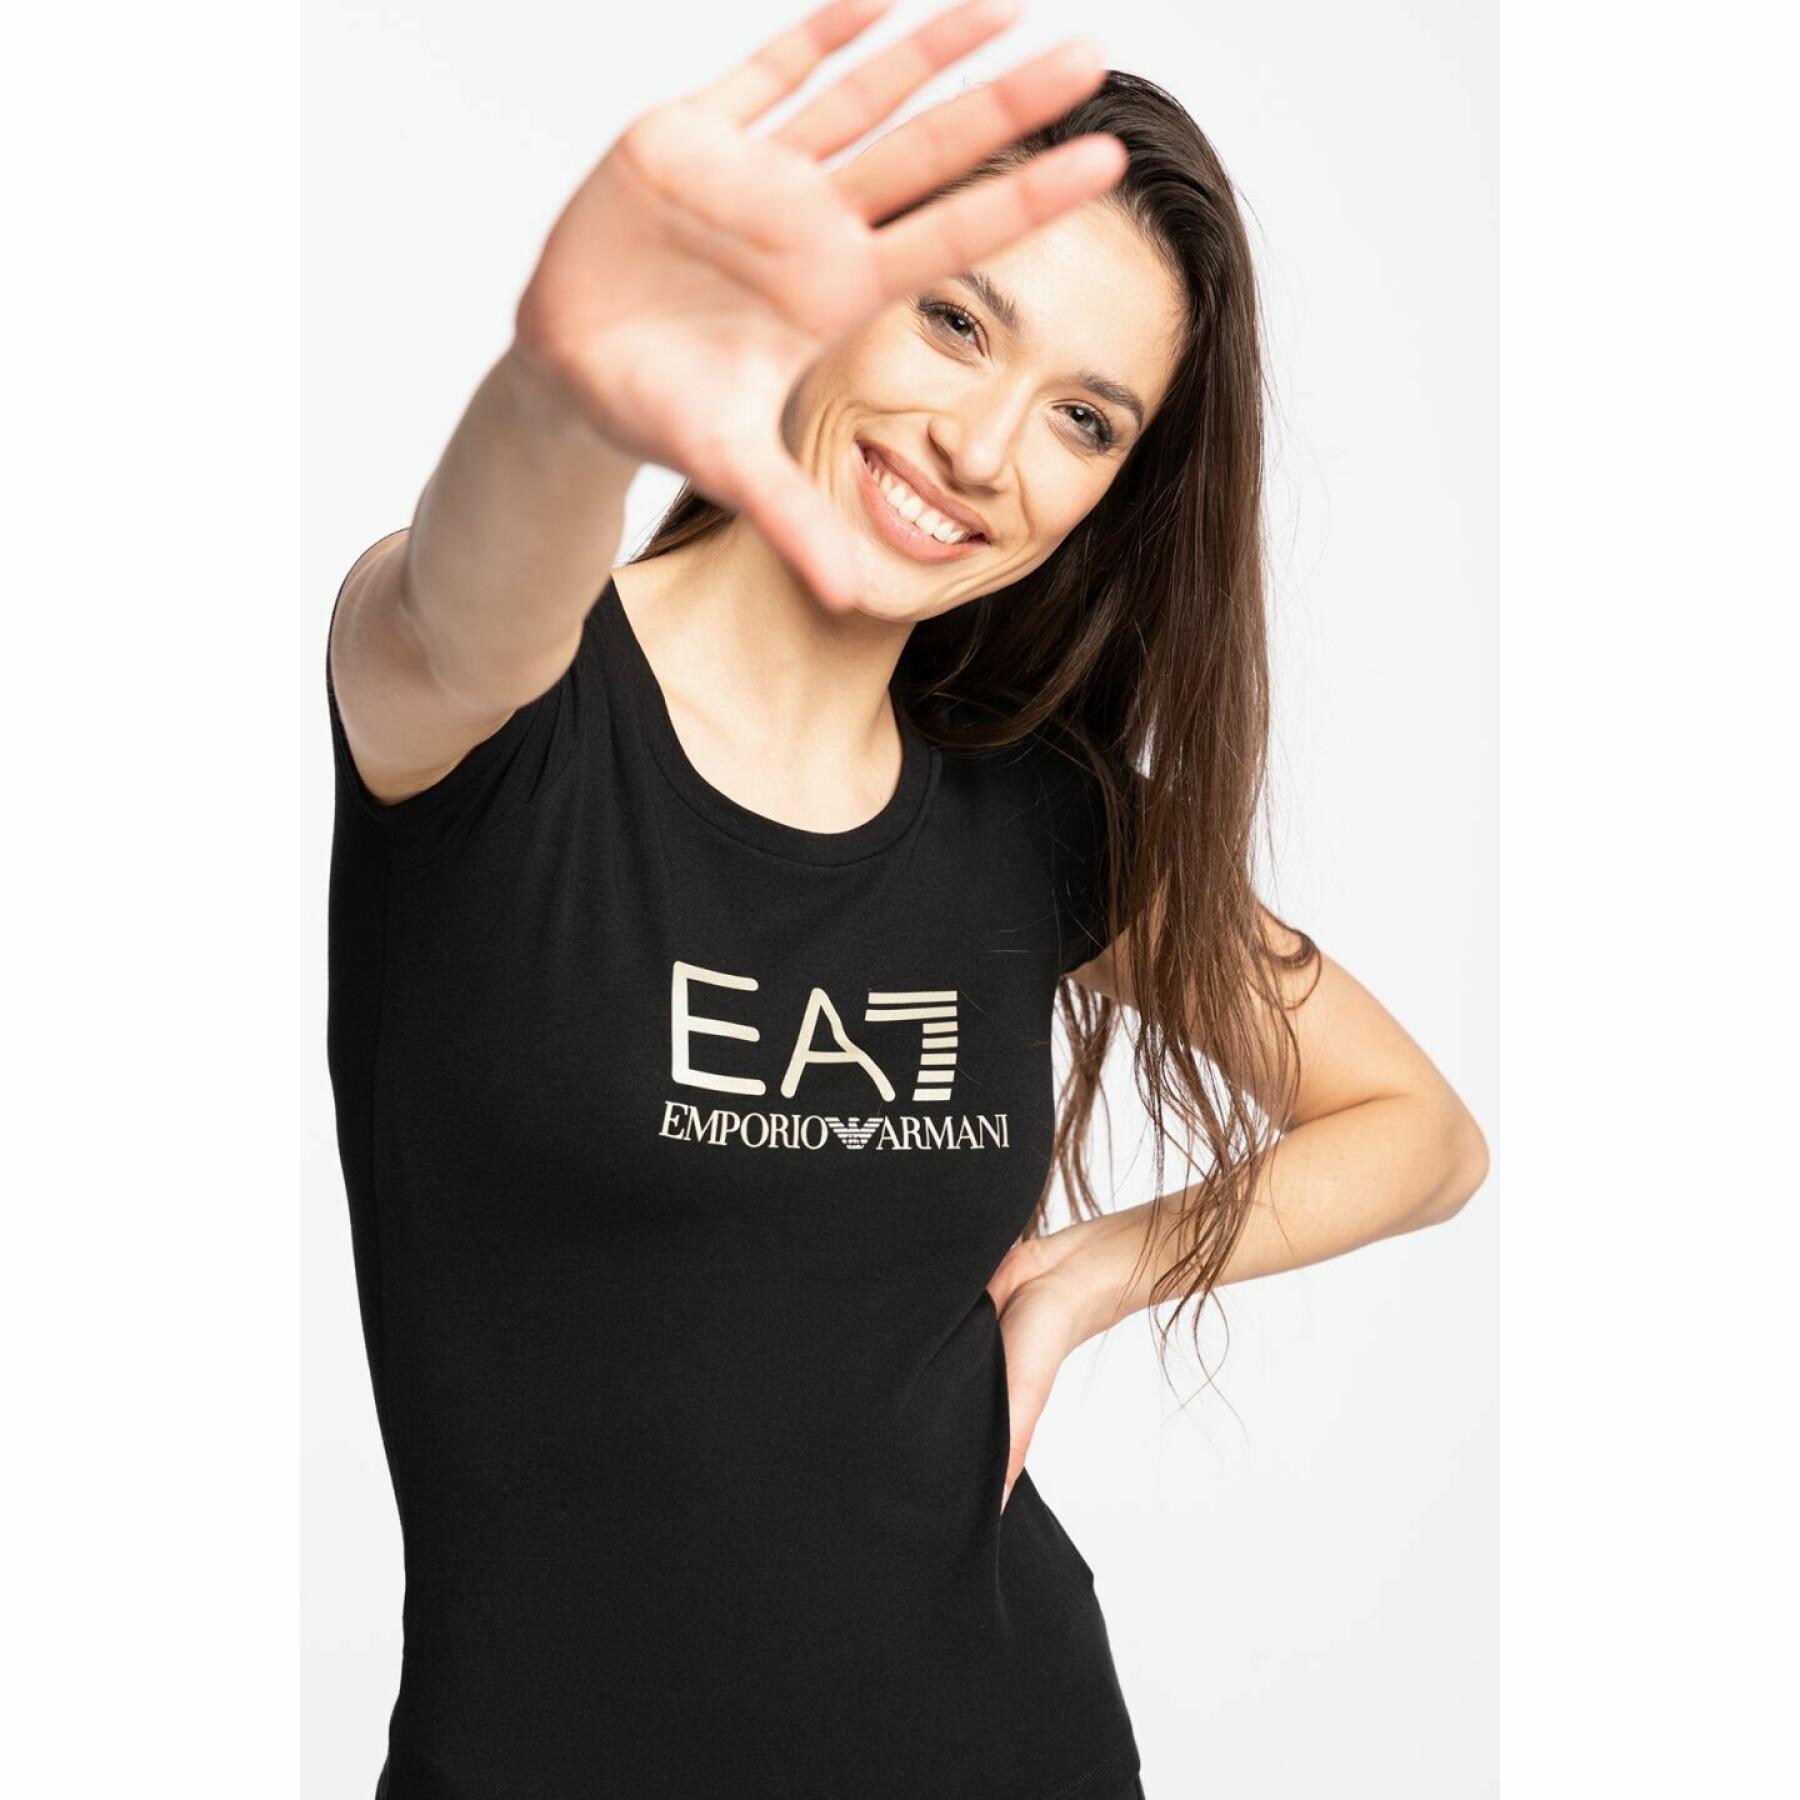 Camiseta de mujer EA7 Emporio Armani